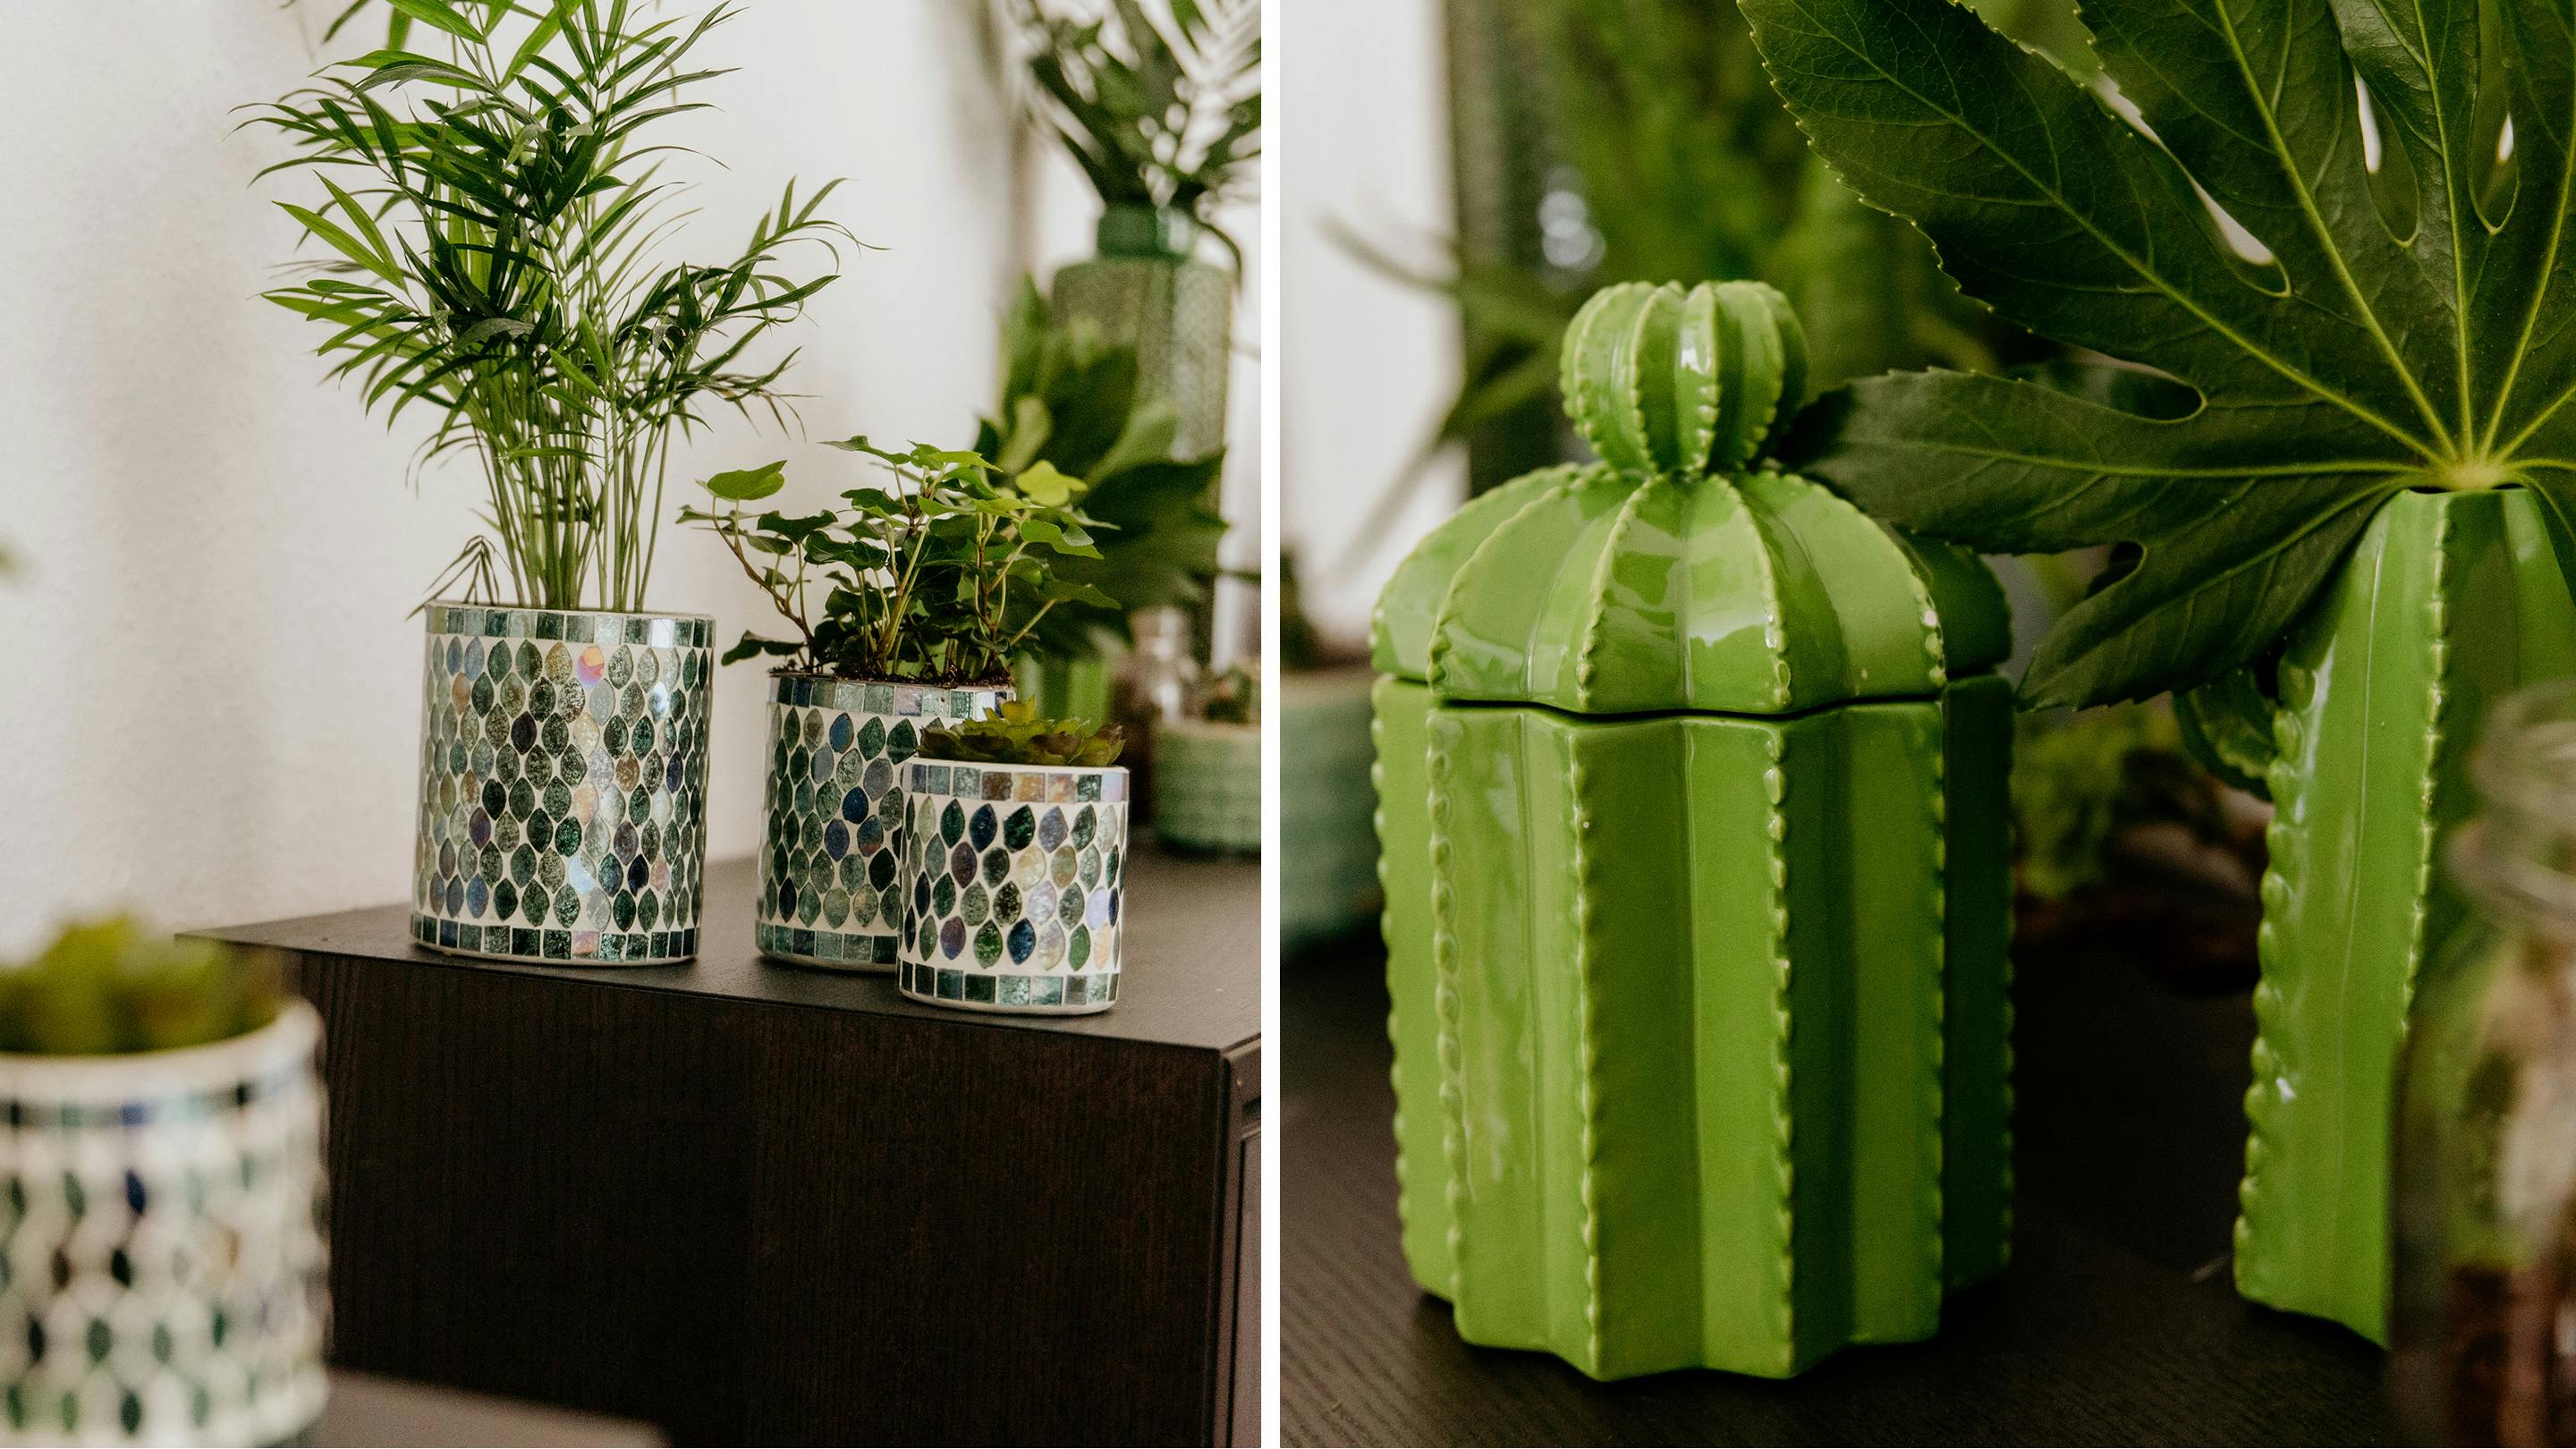 Grüne Zimmerpflanzen gehören zum Urban Jungle-Look dazu (Marke der Vasen und Deko-Objekte: Butlers).